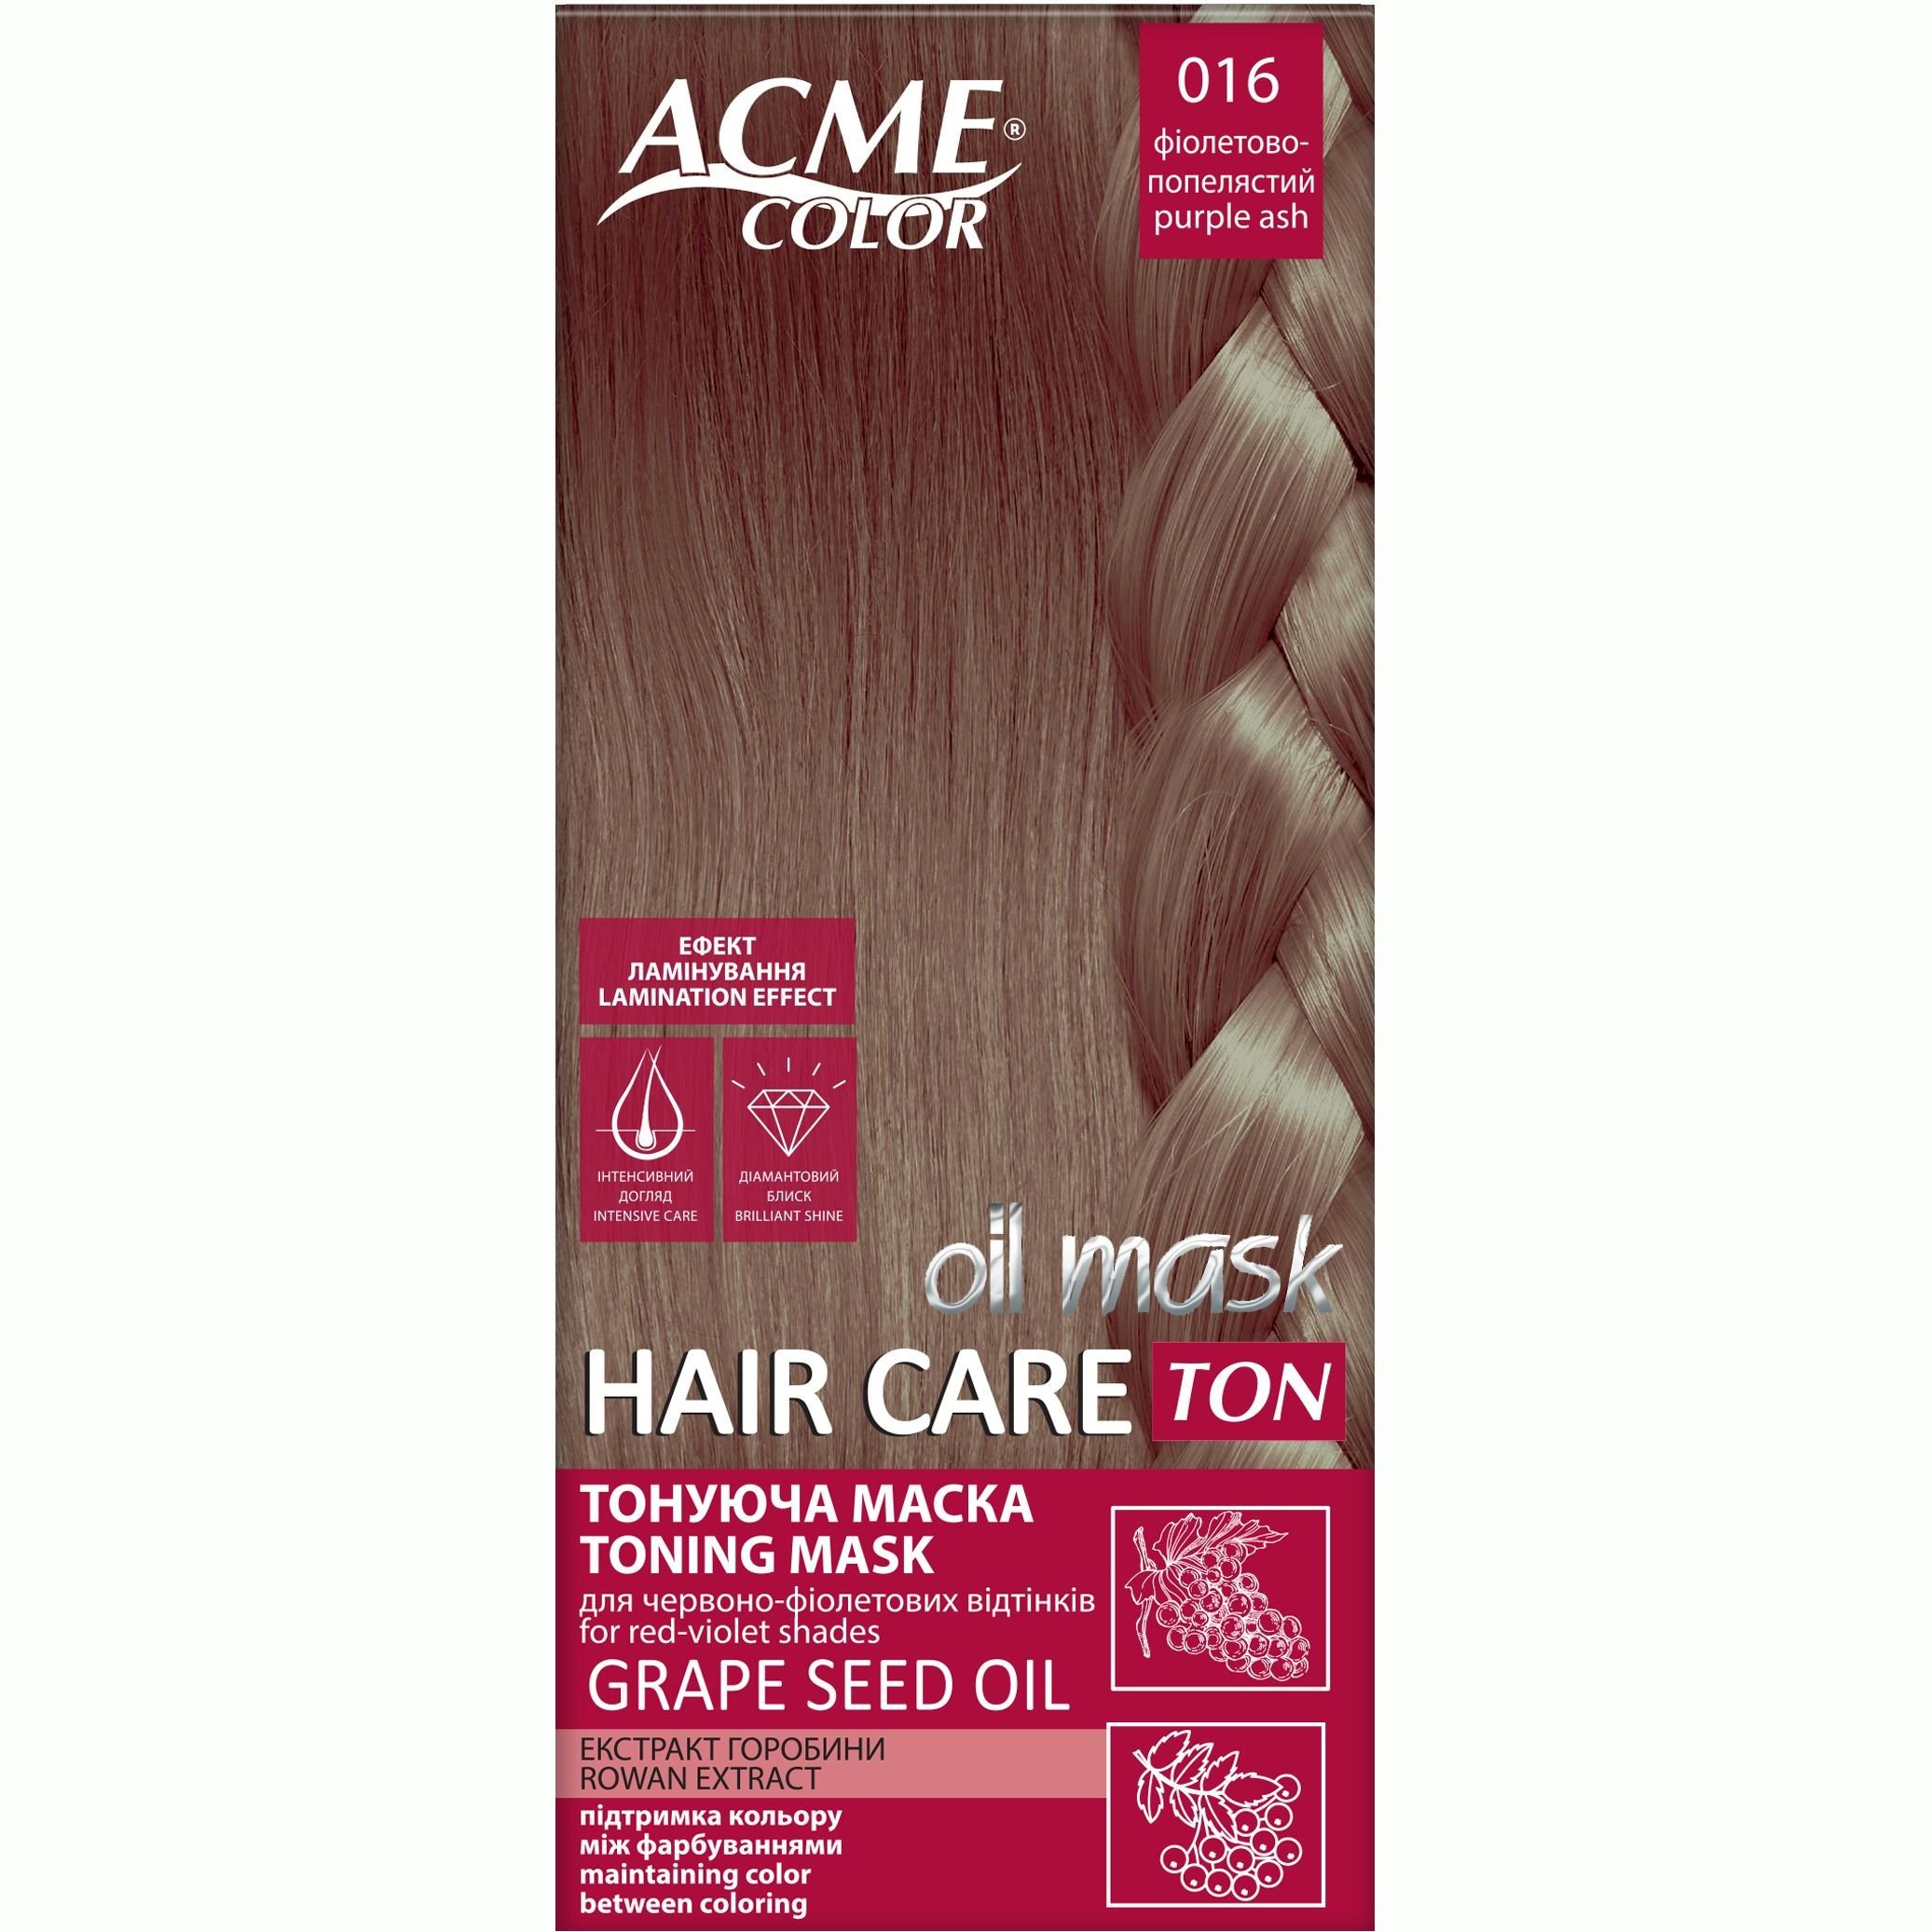 Тонуюча маска для волосся Acme Color Hair Care Ton oil mask, відтінок 016, фіолетово-попелястий, 30 мл - фото 1